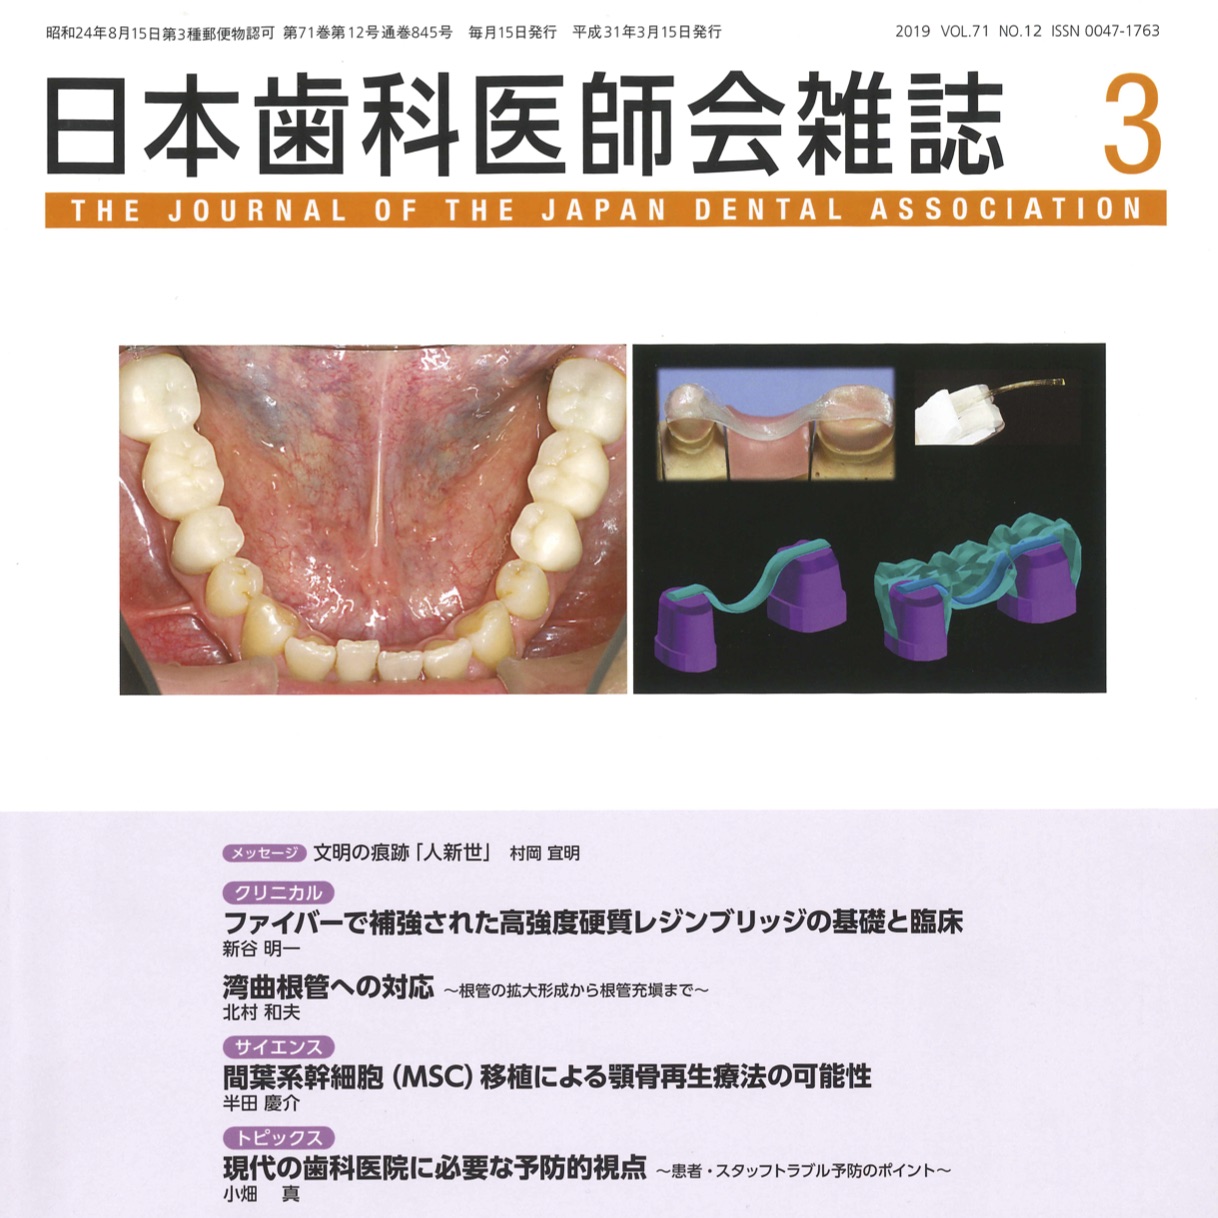 日本歯科医師会雑誌 第71巻 第12号（2019.3号）に寄稿論文が掲載されました。